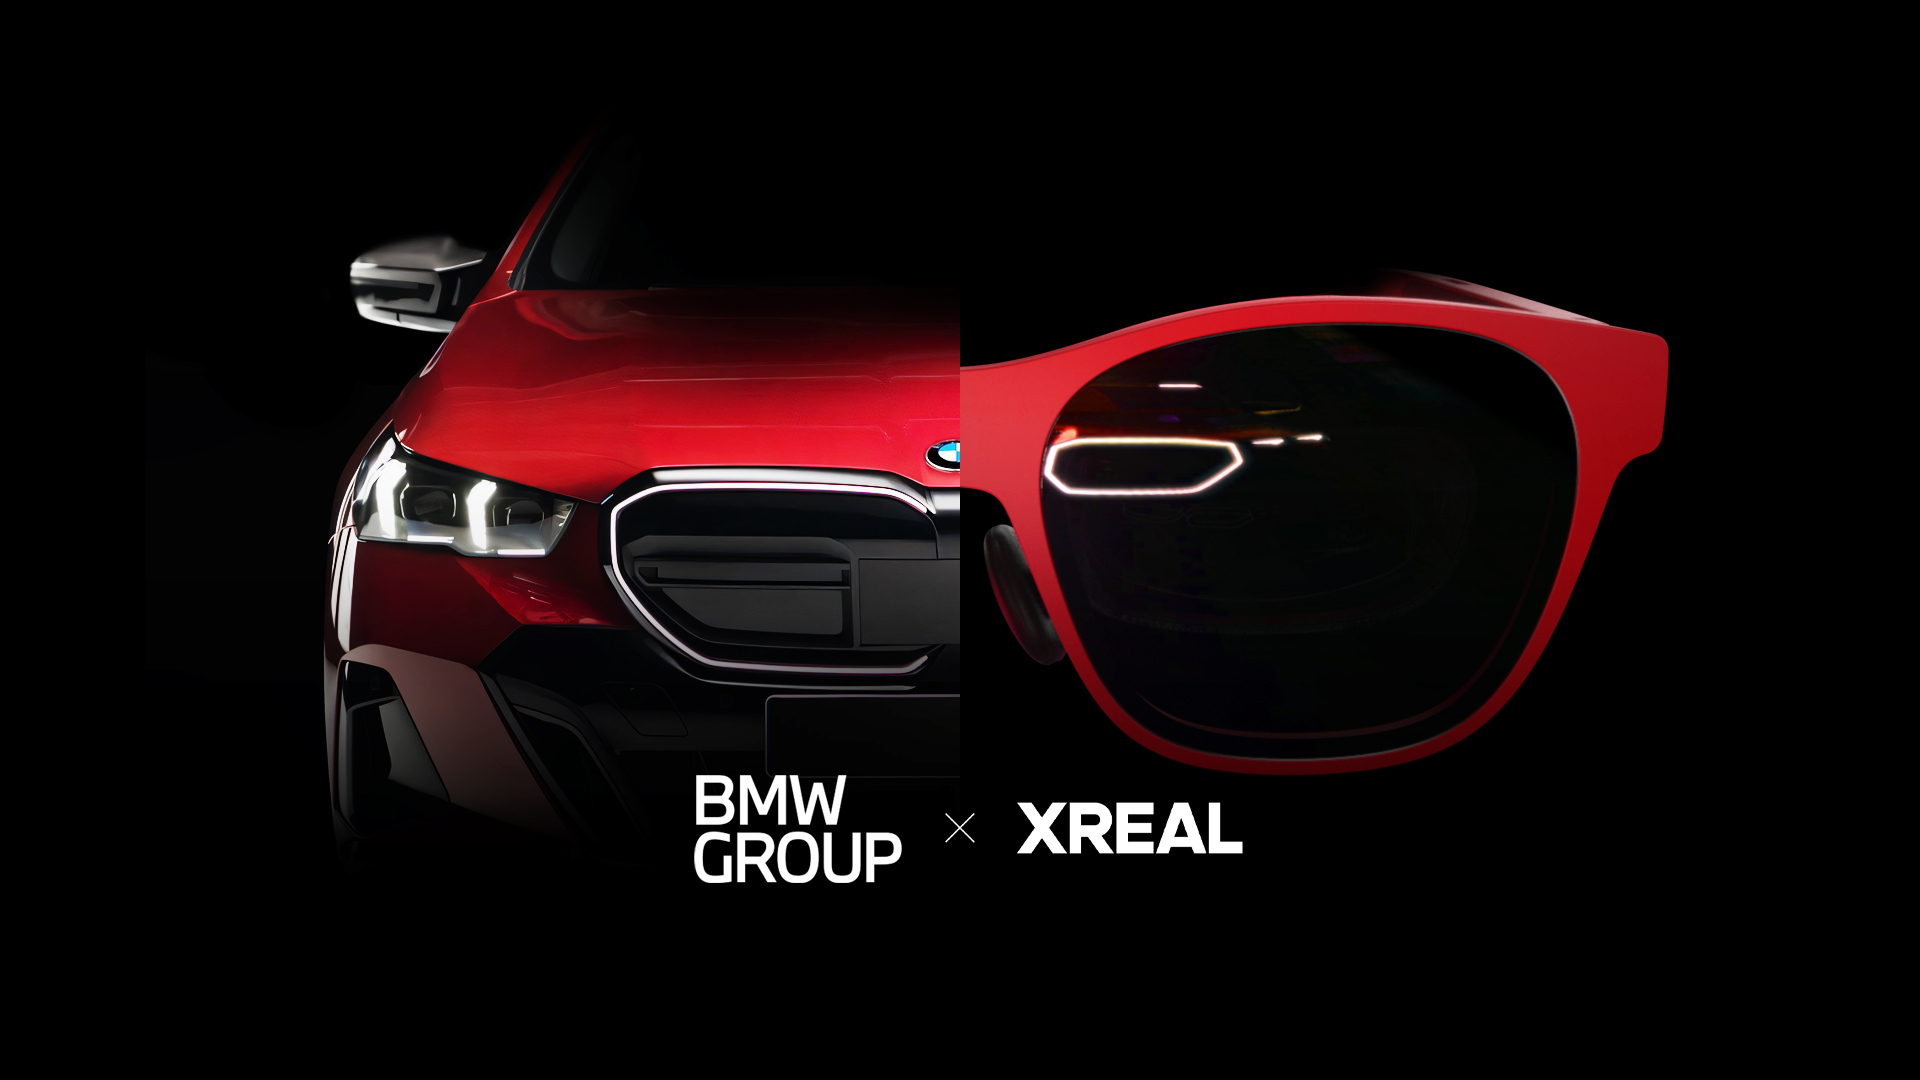 שותפות Xreal x BMW